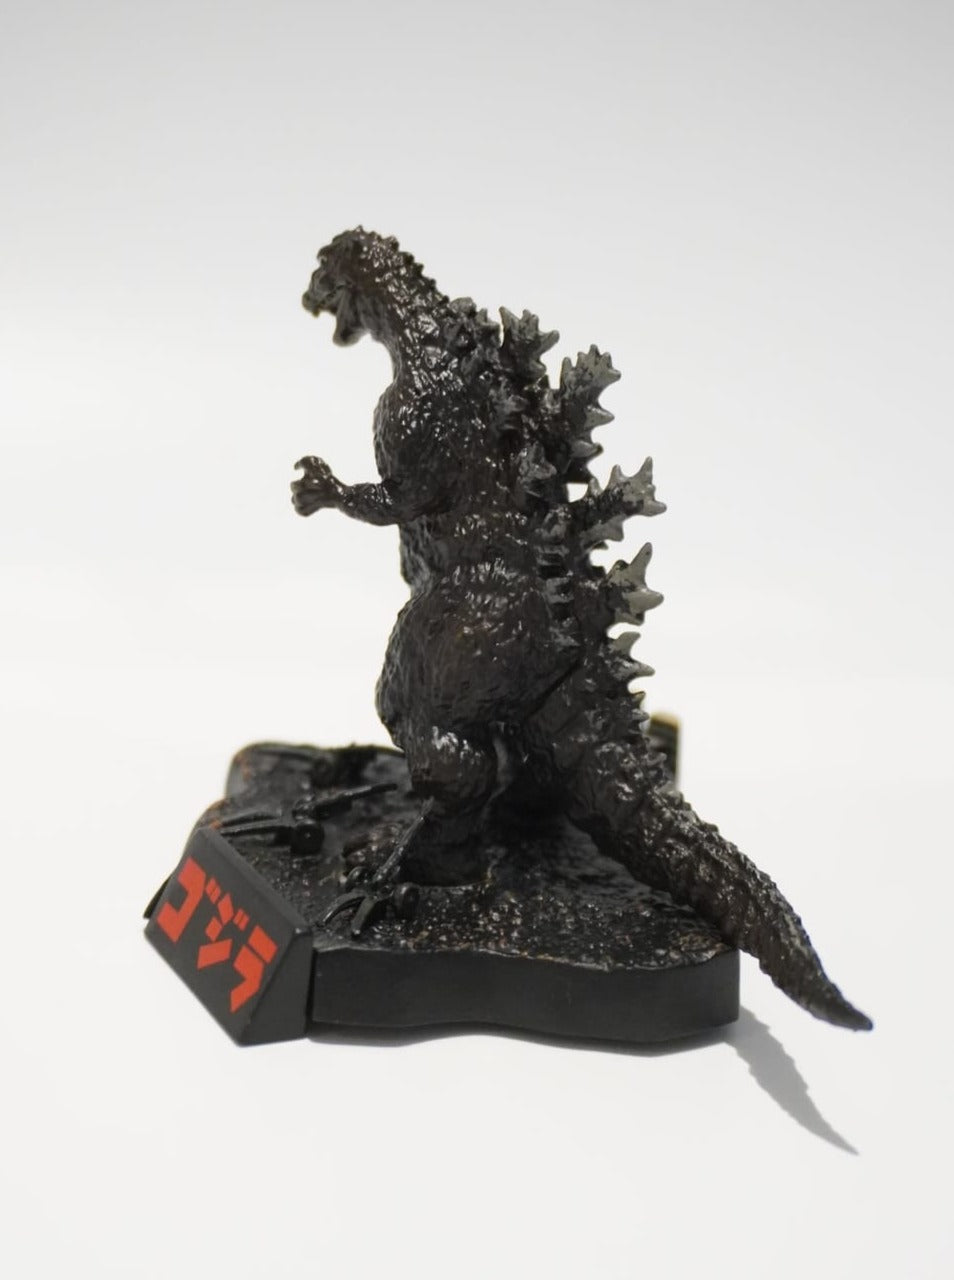 Godzilla Sakai Diorama Figur